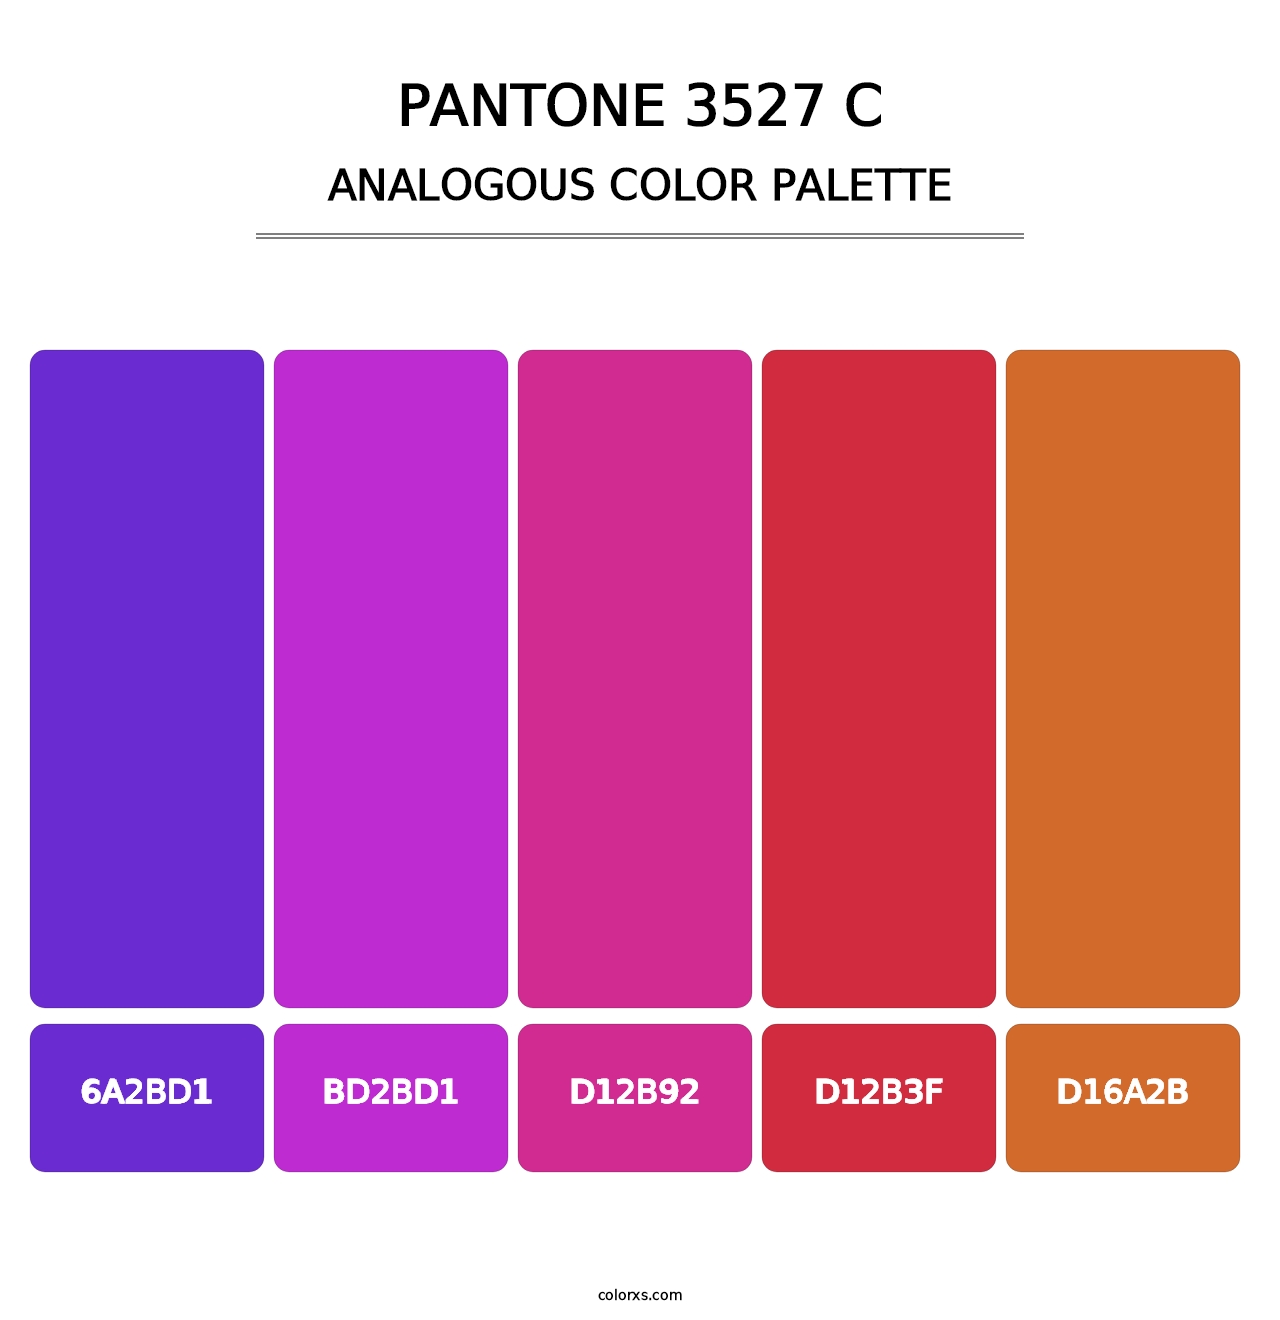 PANTONE 3527 C - Analogous Color Palette